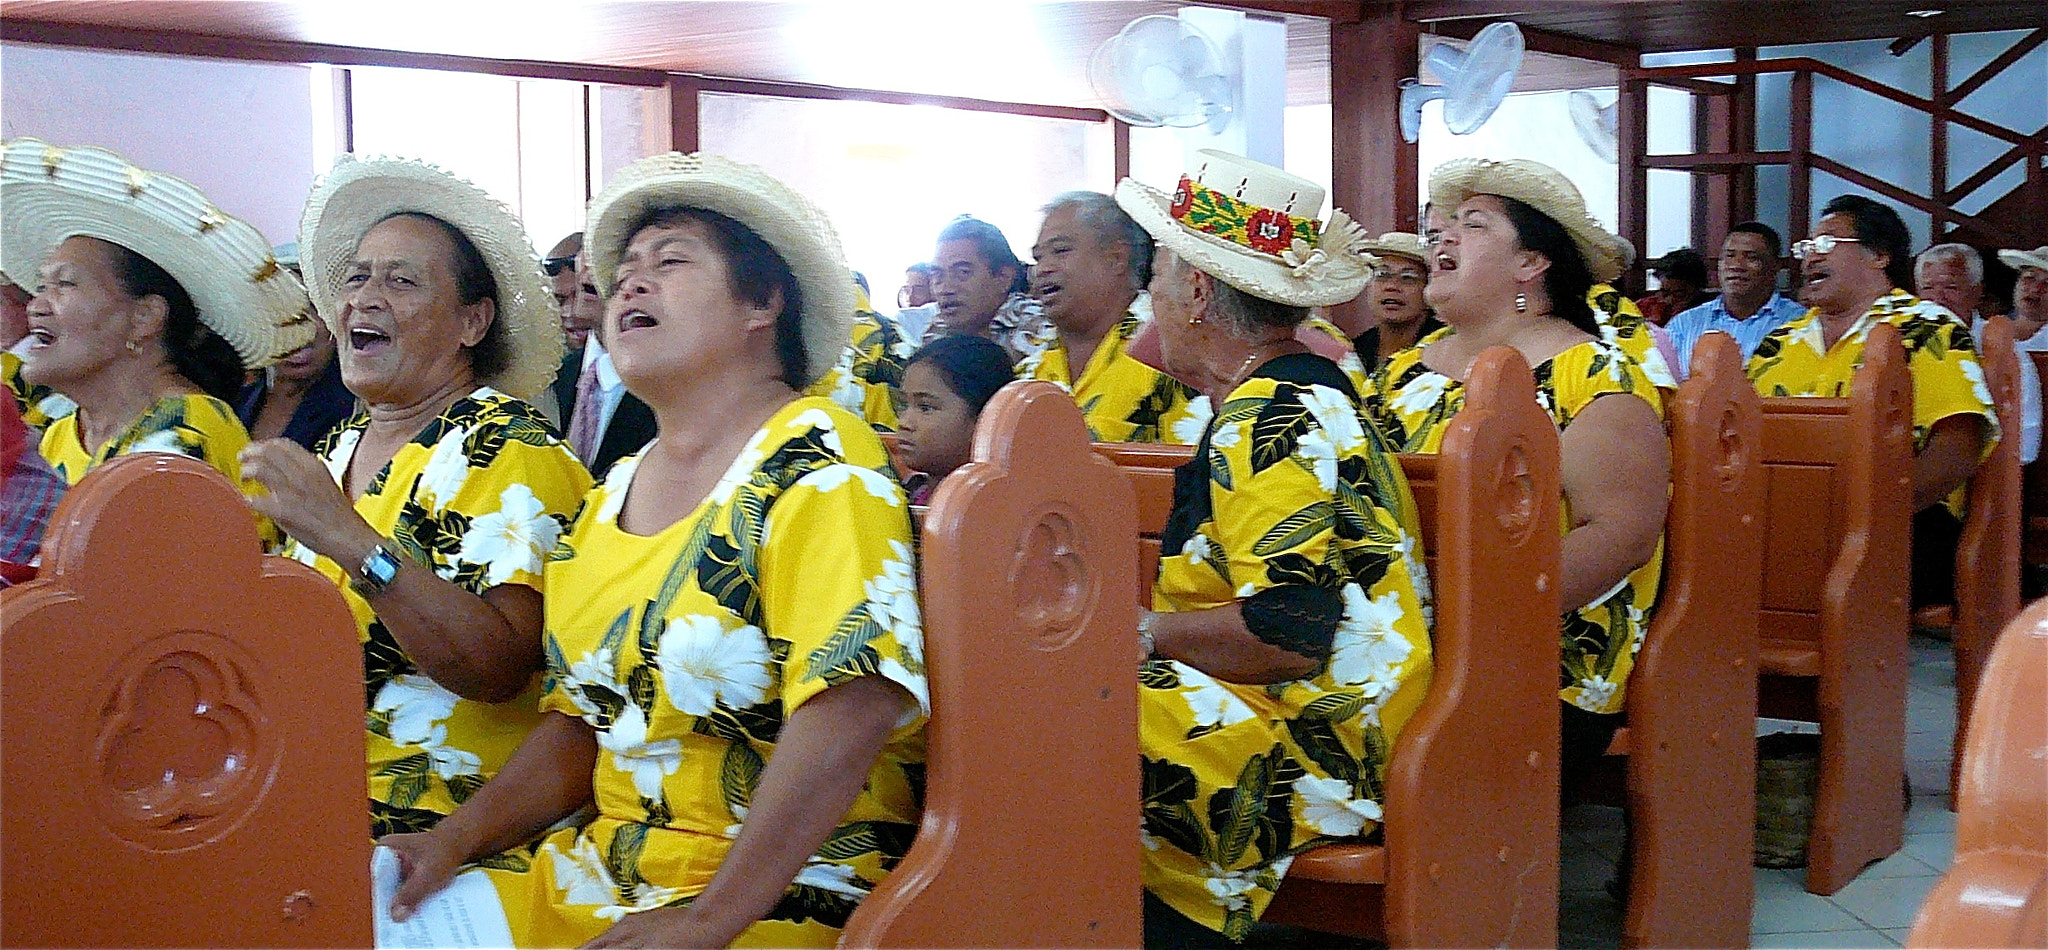 Panasonic DMC-TZ1 sample photo. Cook islands church choir on christmas day photography